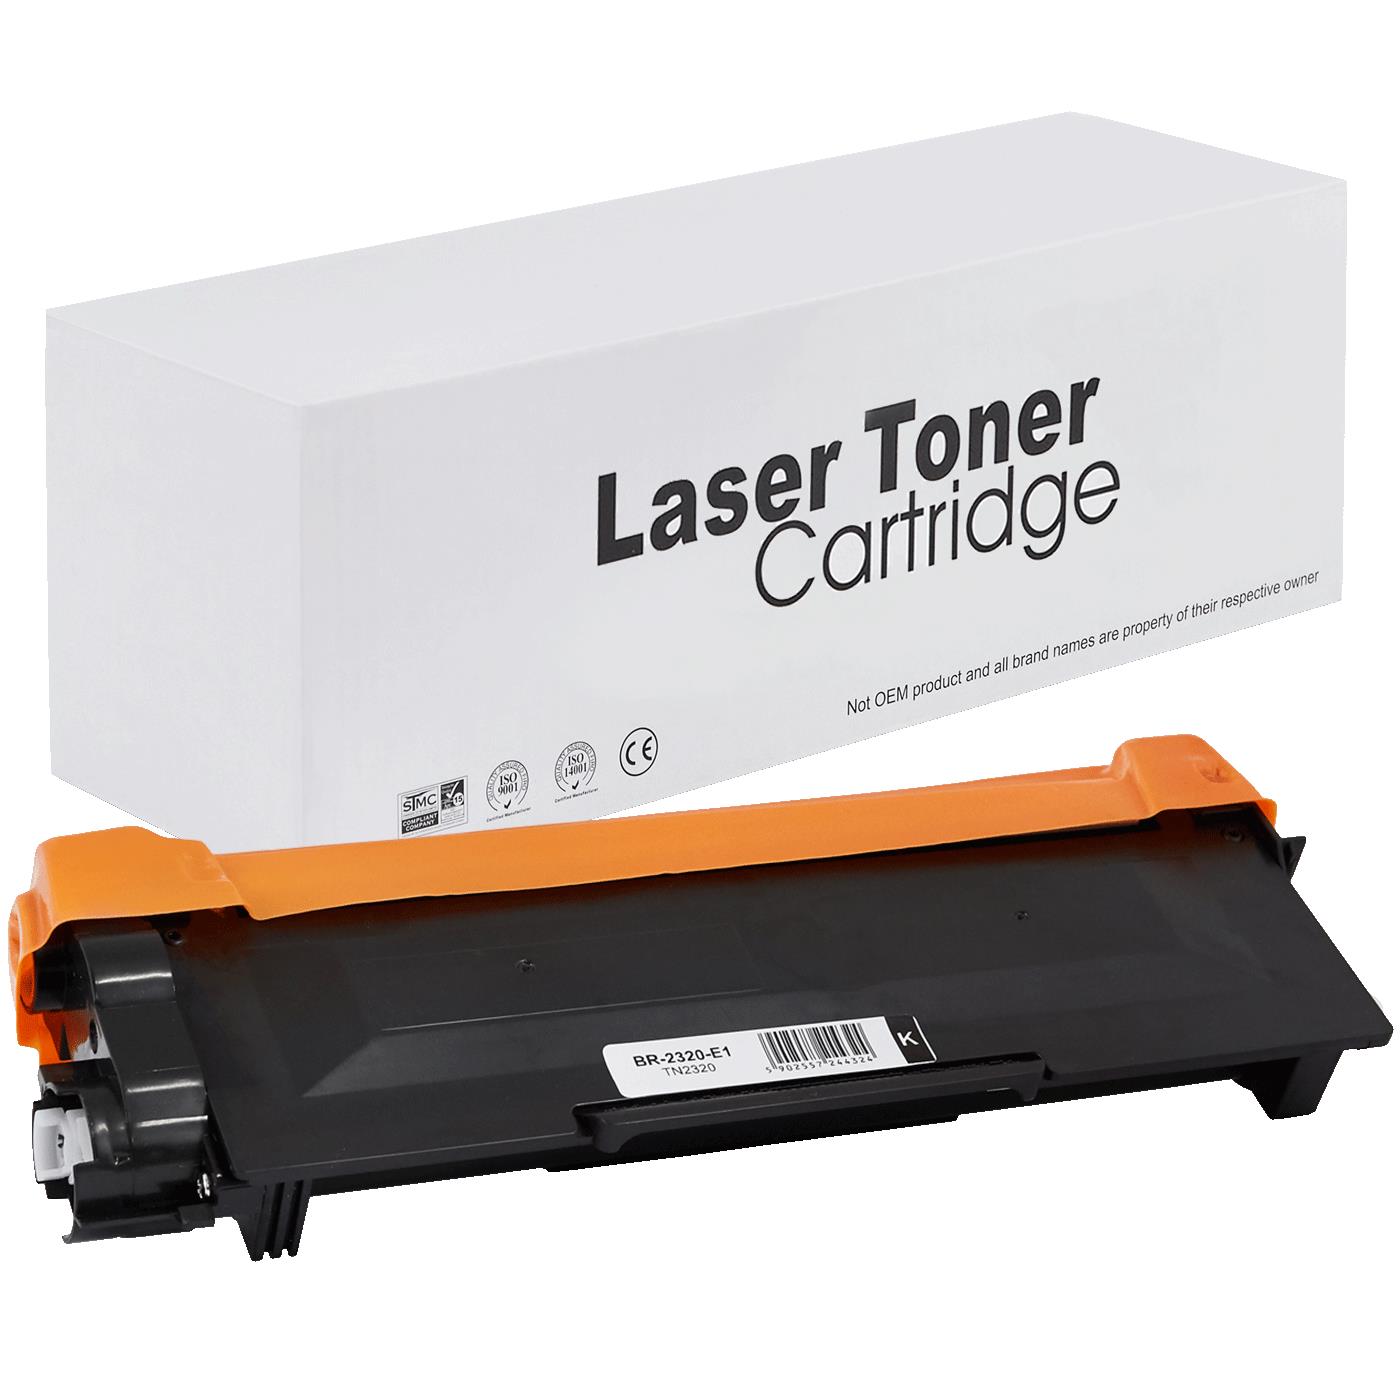 съвместима тонер касета за принтери и печатащи устройства на Brother HL-L 2320 D Toner BR-2320 | TN2320 / TN2310 / TN-2320. Ниски цени, прецизно изпълнение, високо качество.